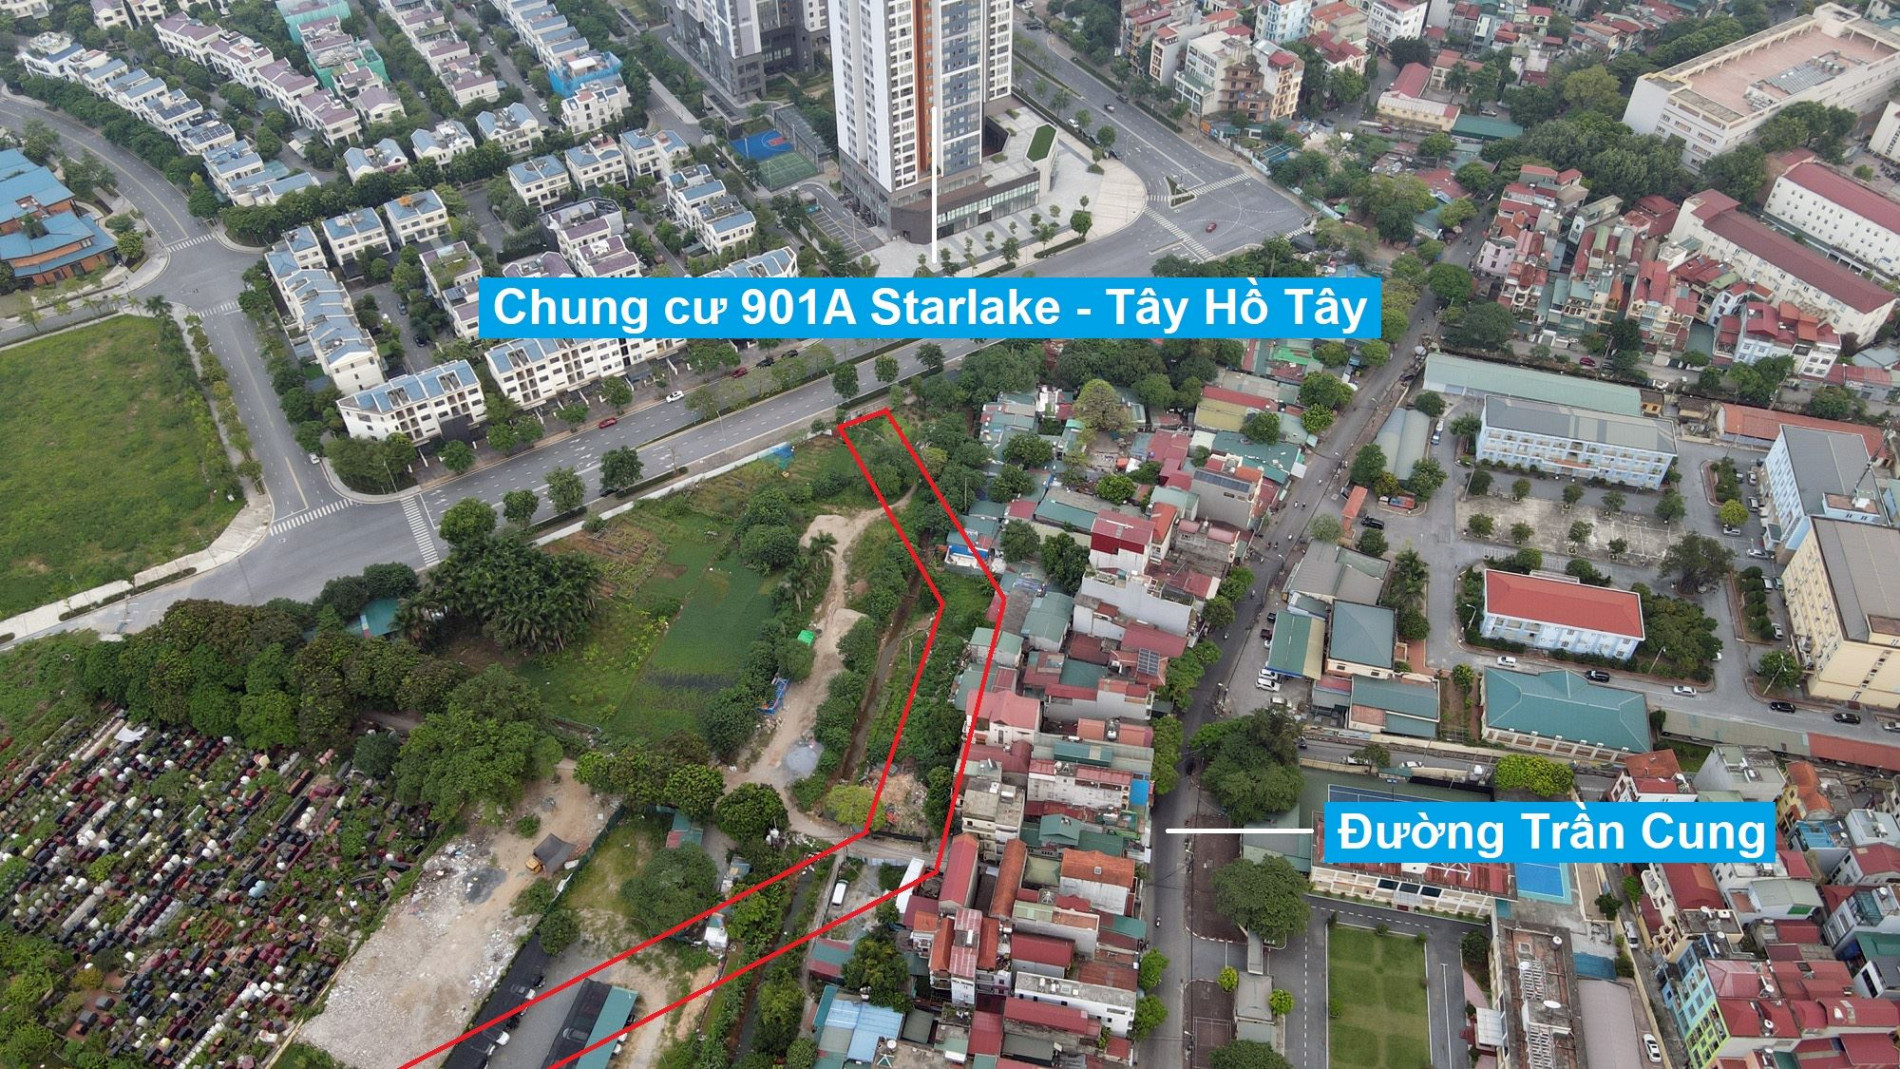 Đường sẽ mở theo quy hoạch ở phường Cổ Nhuế 1, Bắc Từ Liêm, Hà Nội (phần 3)